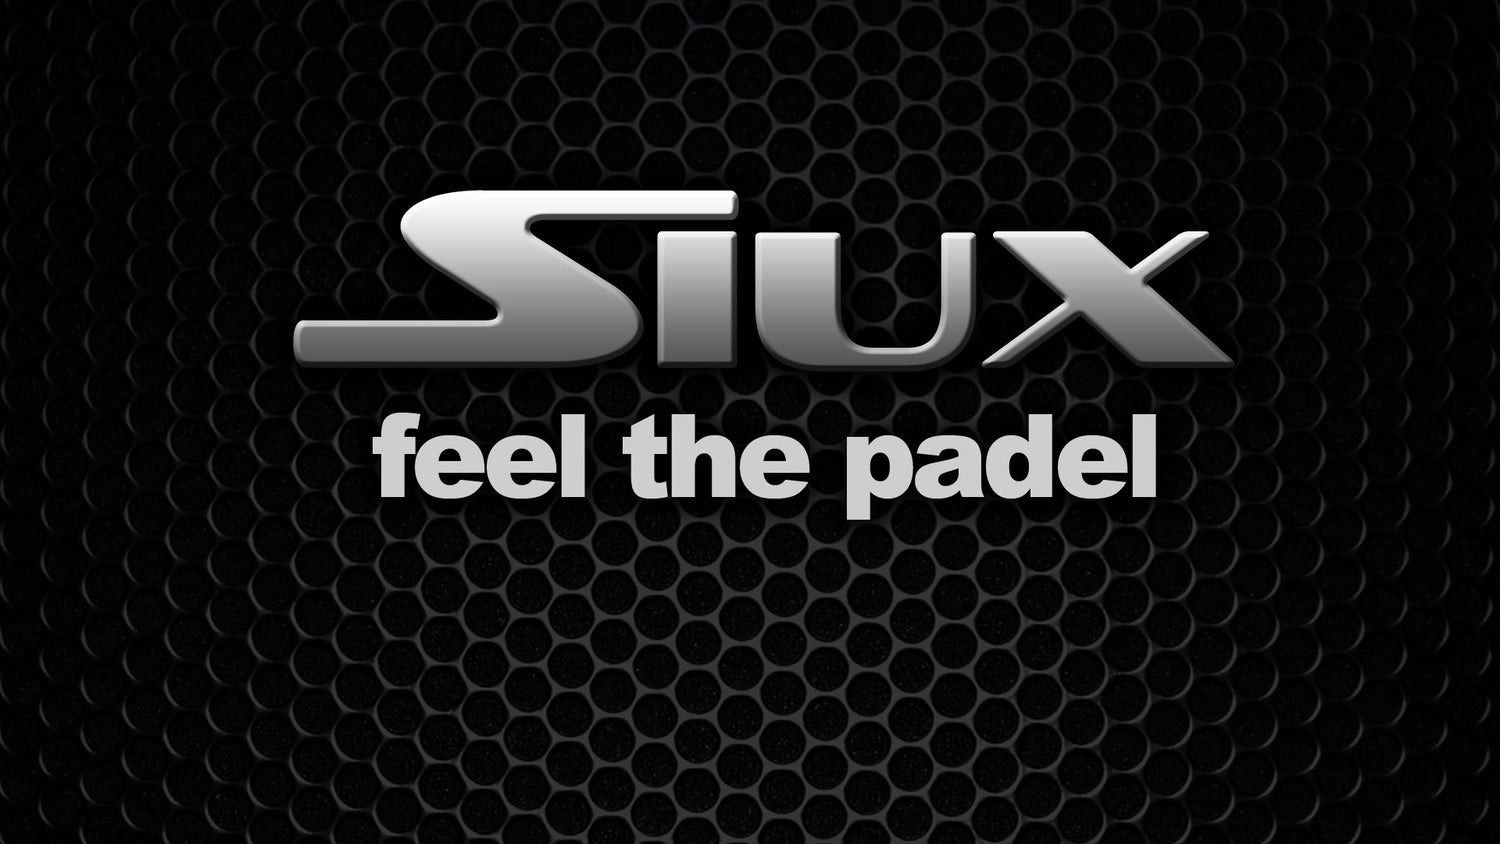 Immagine logo Siux grigio con scritta "Feel the padel"